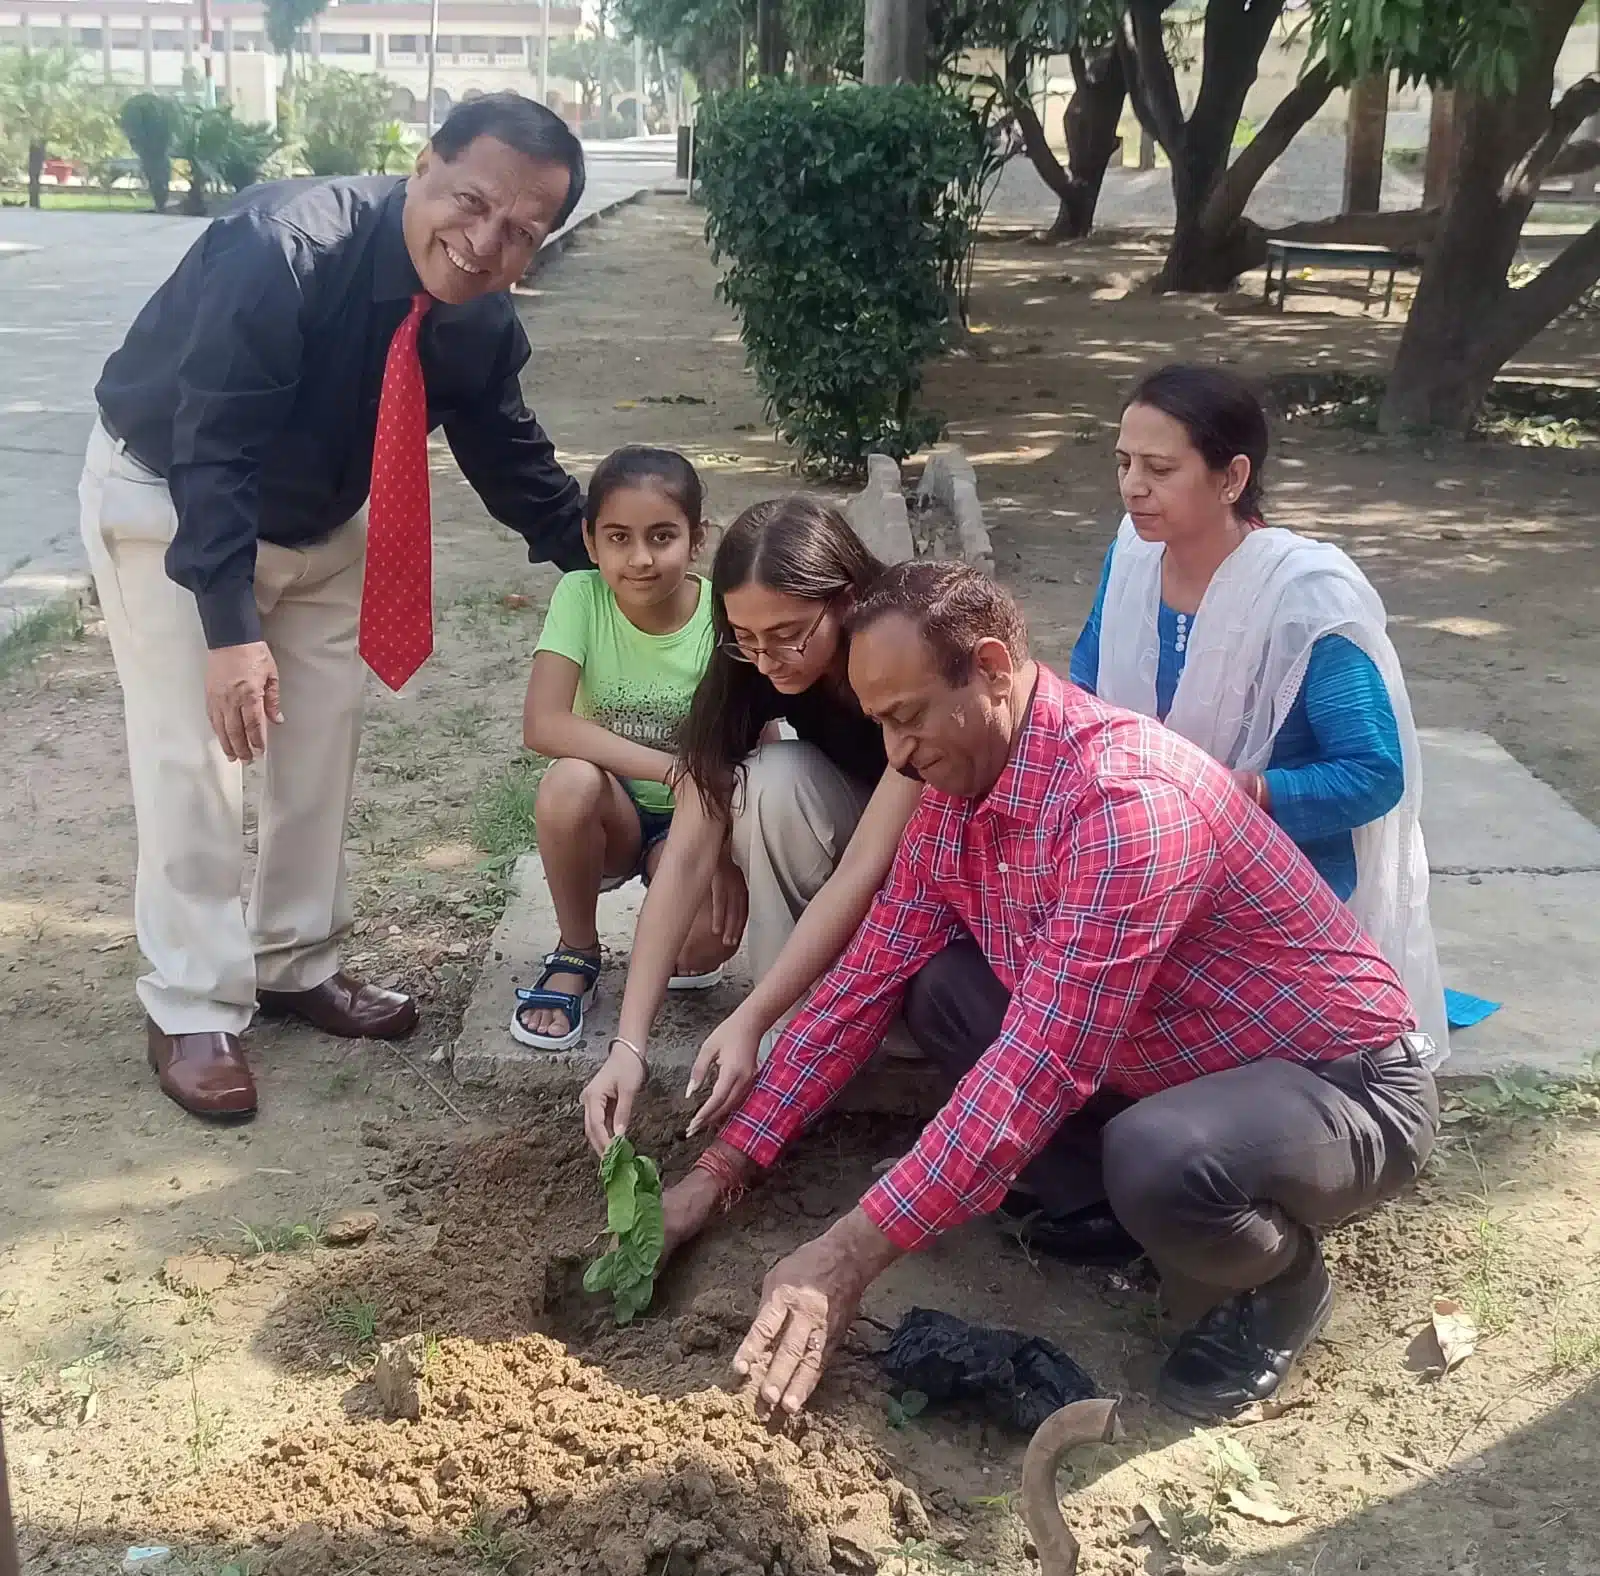 छात्रा ने जन्मदिन पर स्कूल में पौधा लगाकर पर्यावरण को हरा भरा रखने का दिया संदेश, अन्य बच्चों को भी इससे सीख लेनी चाहिए- डाक्टर अतरसिंह